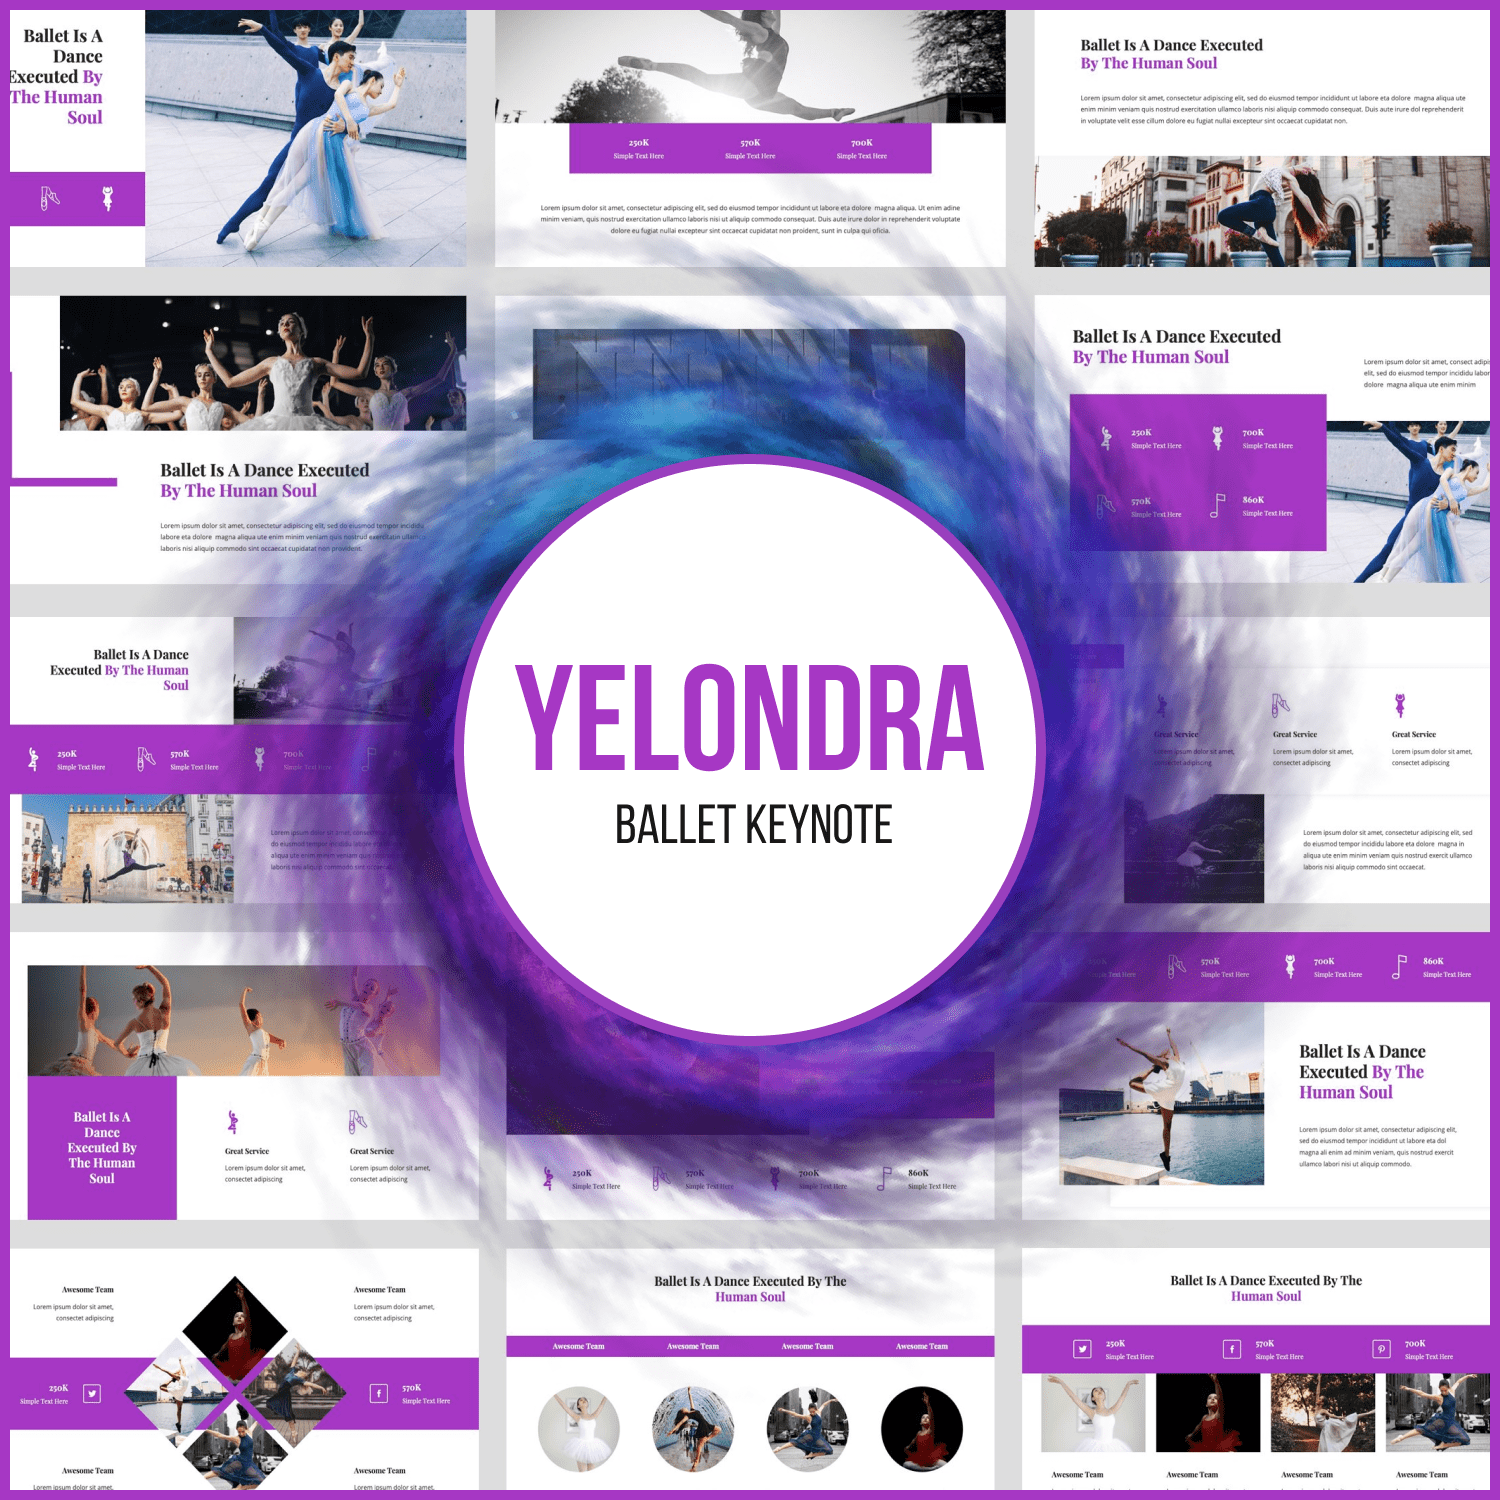 Yelondra - Ballet Keynote.